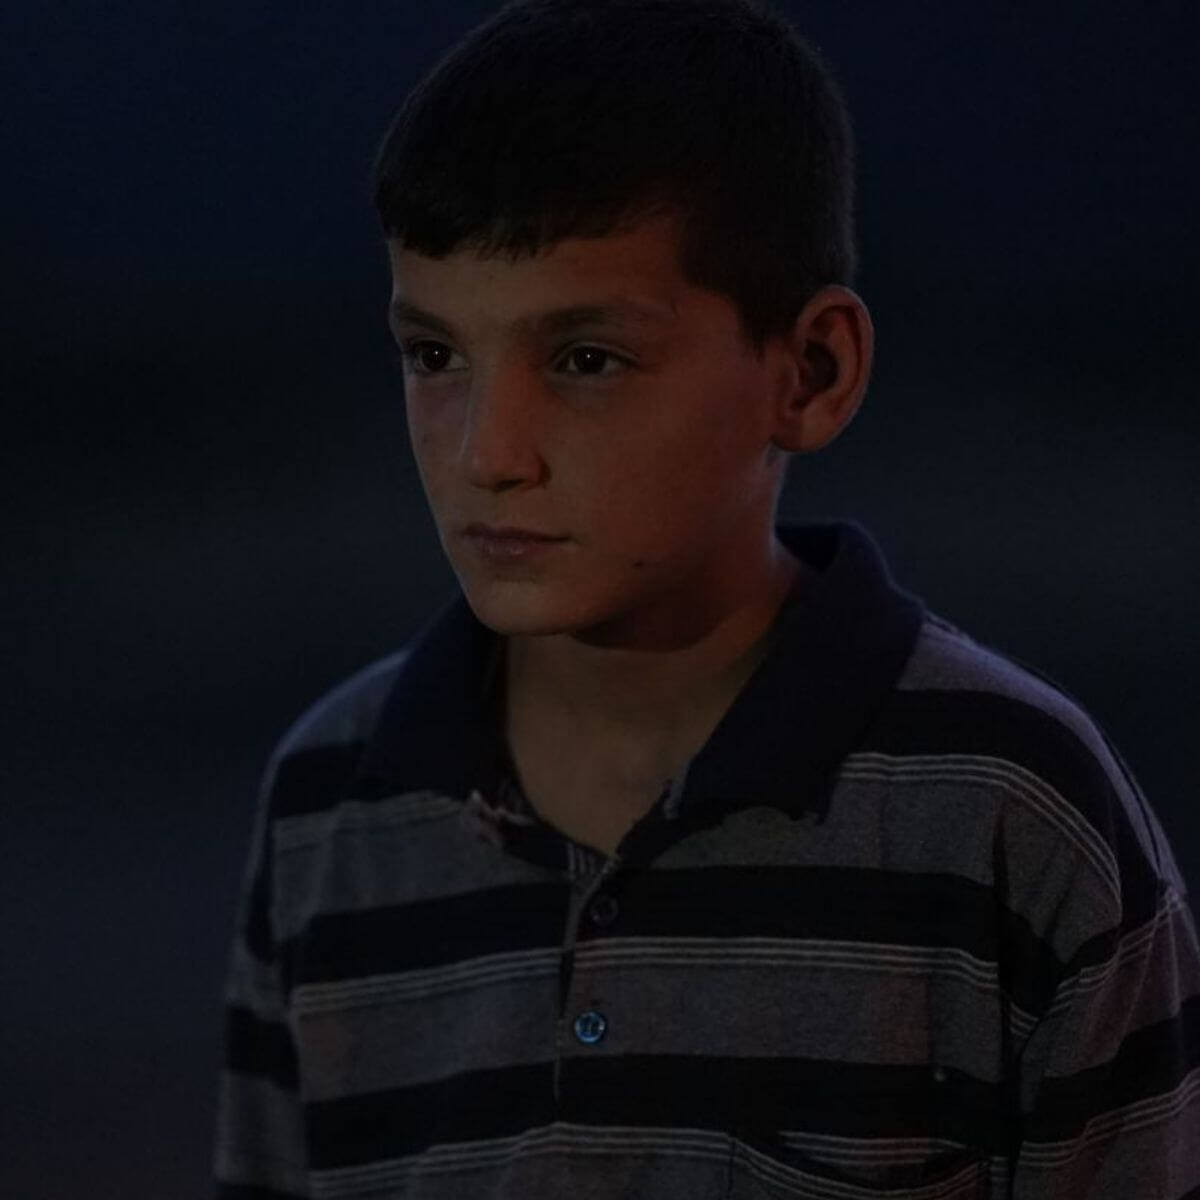 Ramazan Uzun actor of Victim ShortFilm